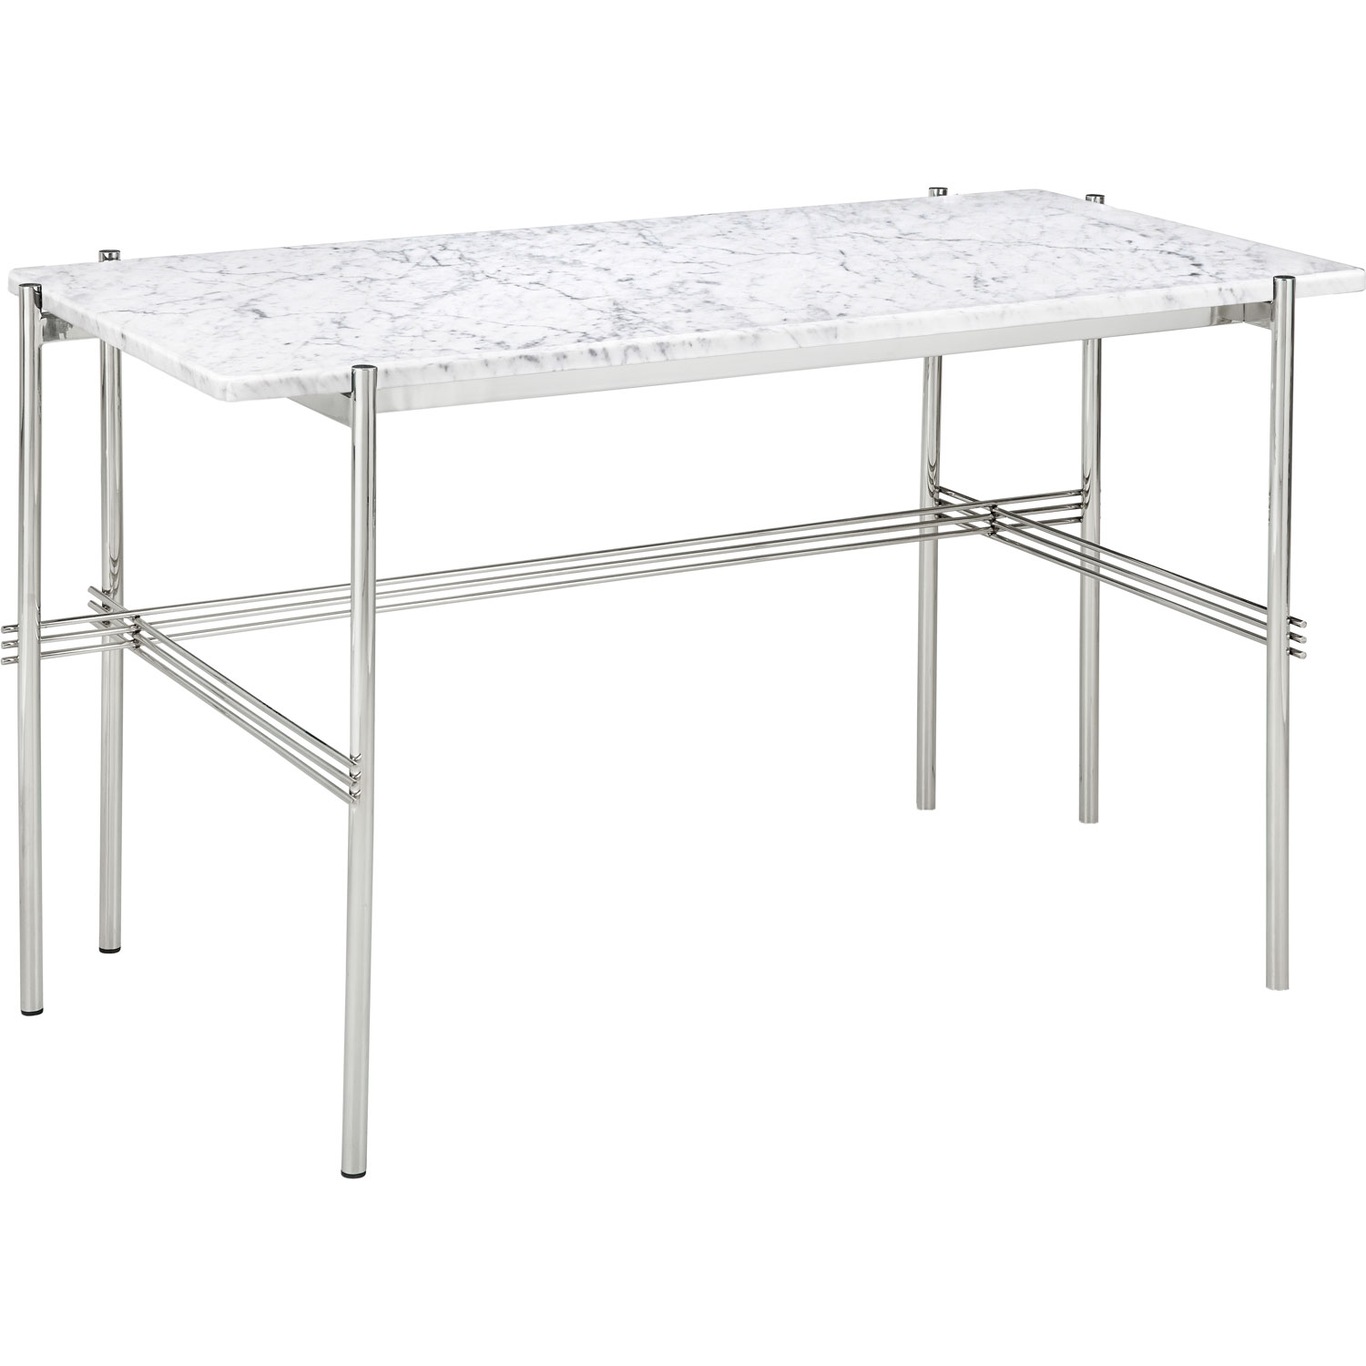 TS Pöytä 60x120 cm, Kiiltävä Teräs / Valkoinen Carrara-marmori